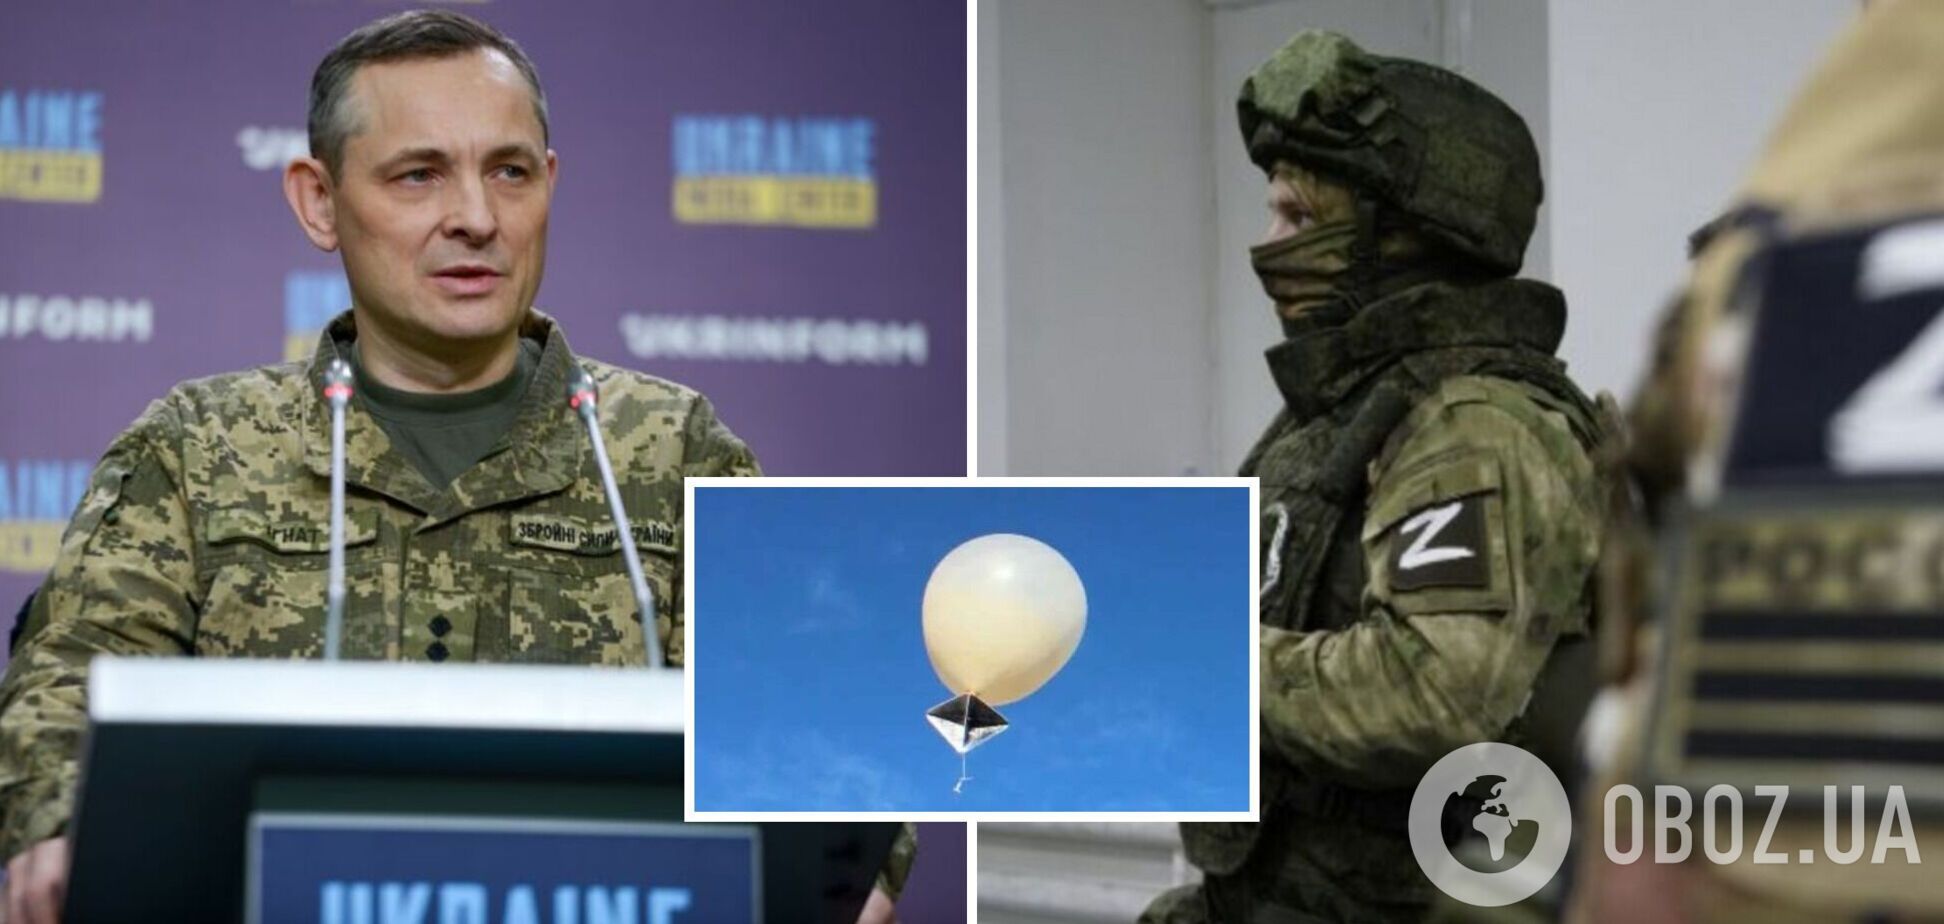 Не только для отвлечения внимания ПВО: Игнат объяснил, почему оккупанты начали запускать воздушные шары над Украиной